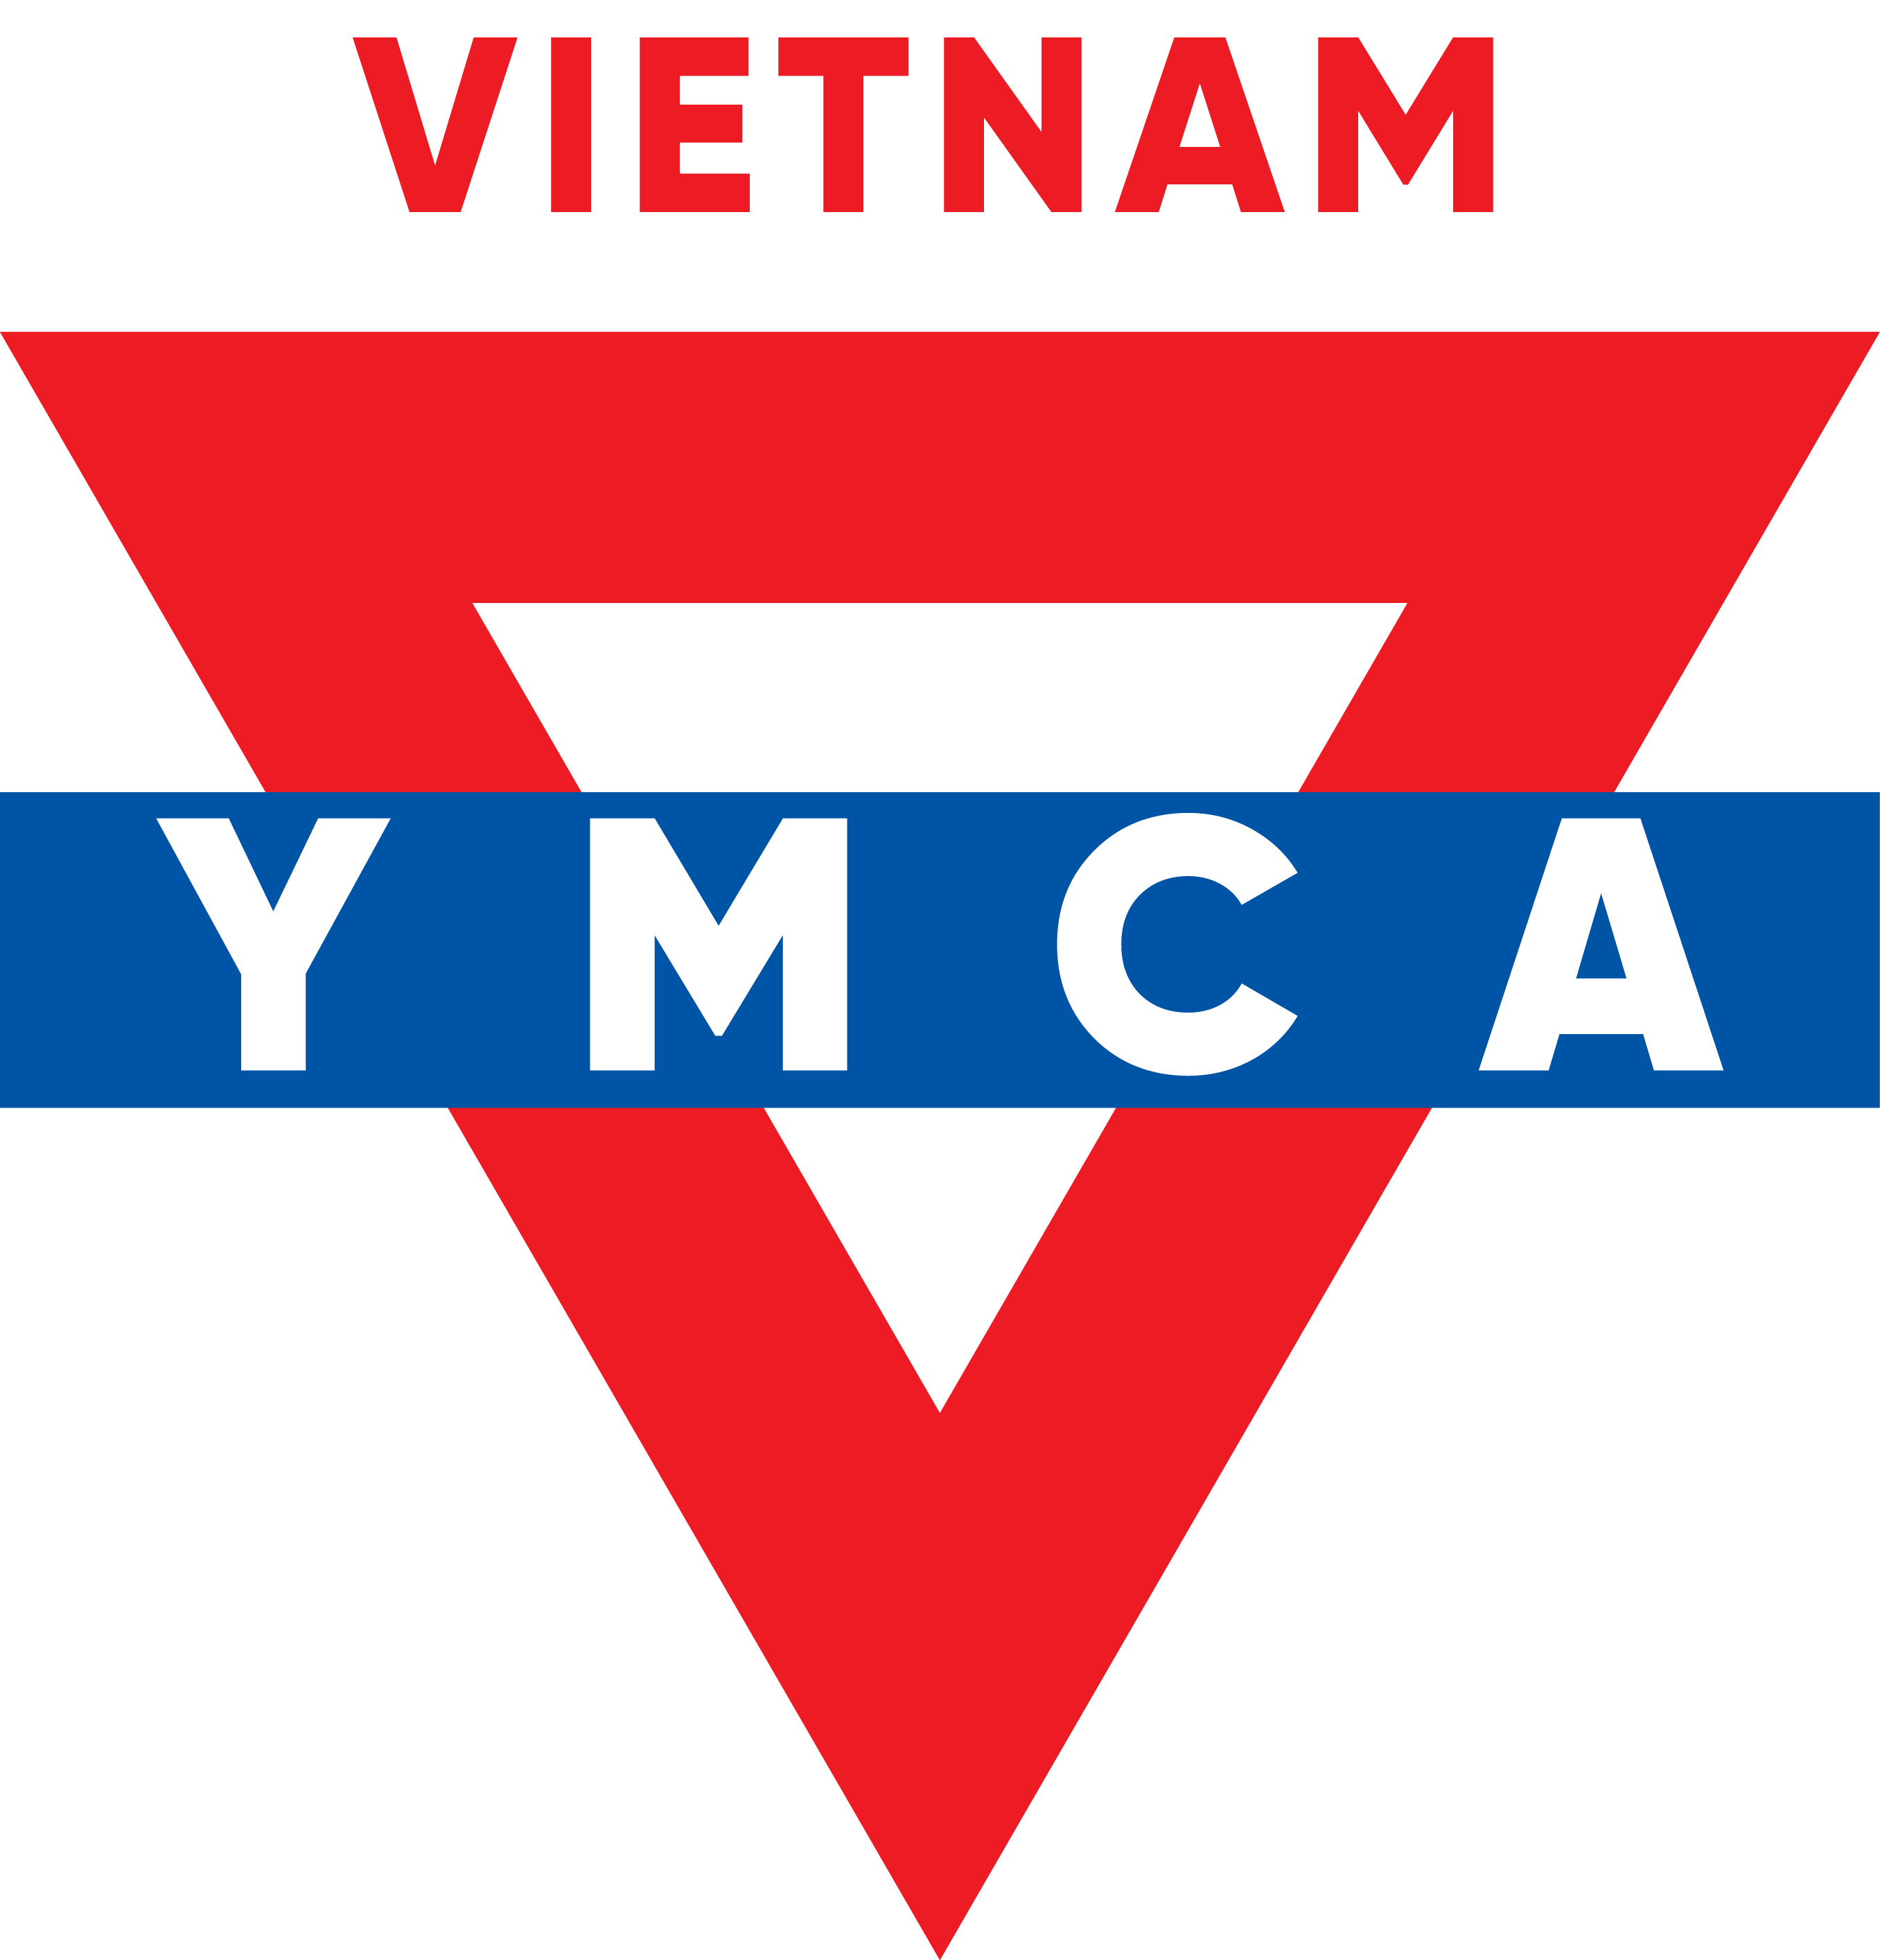 YMCA Vietnam